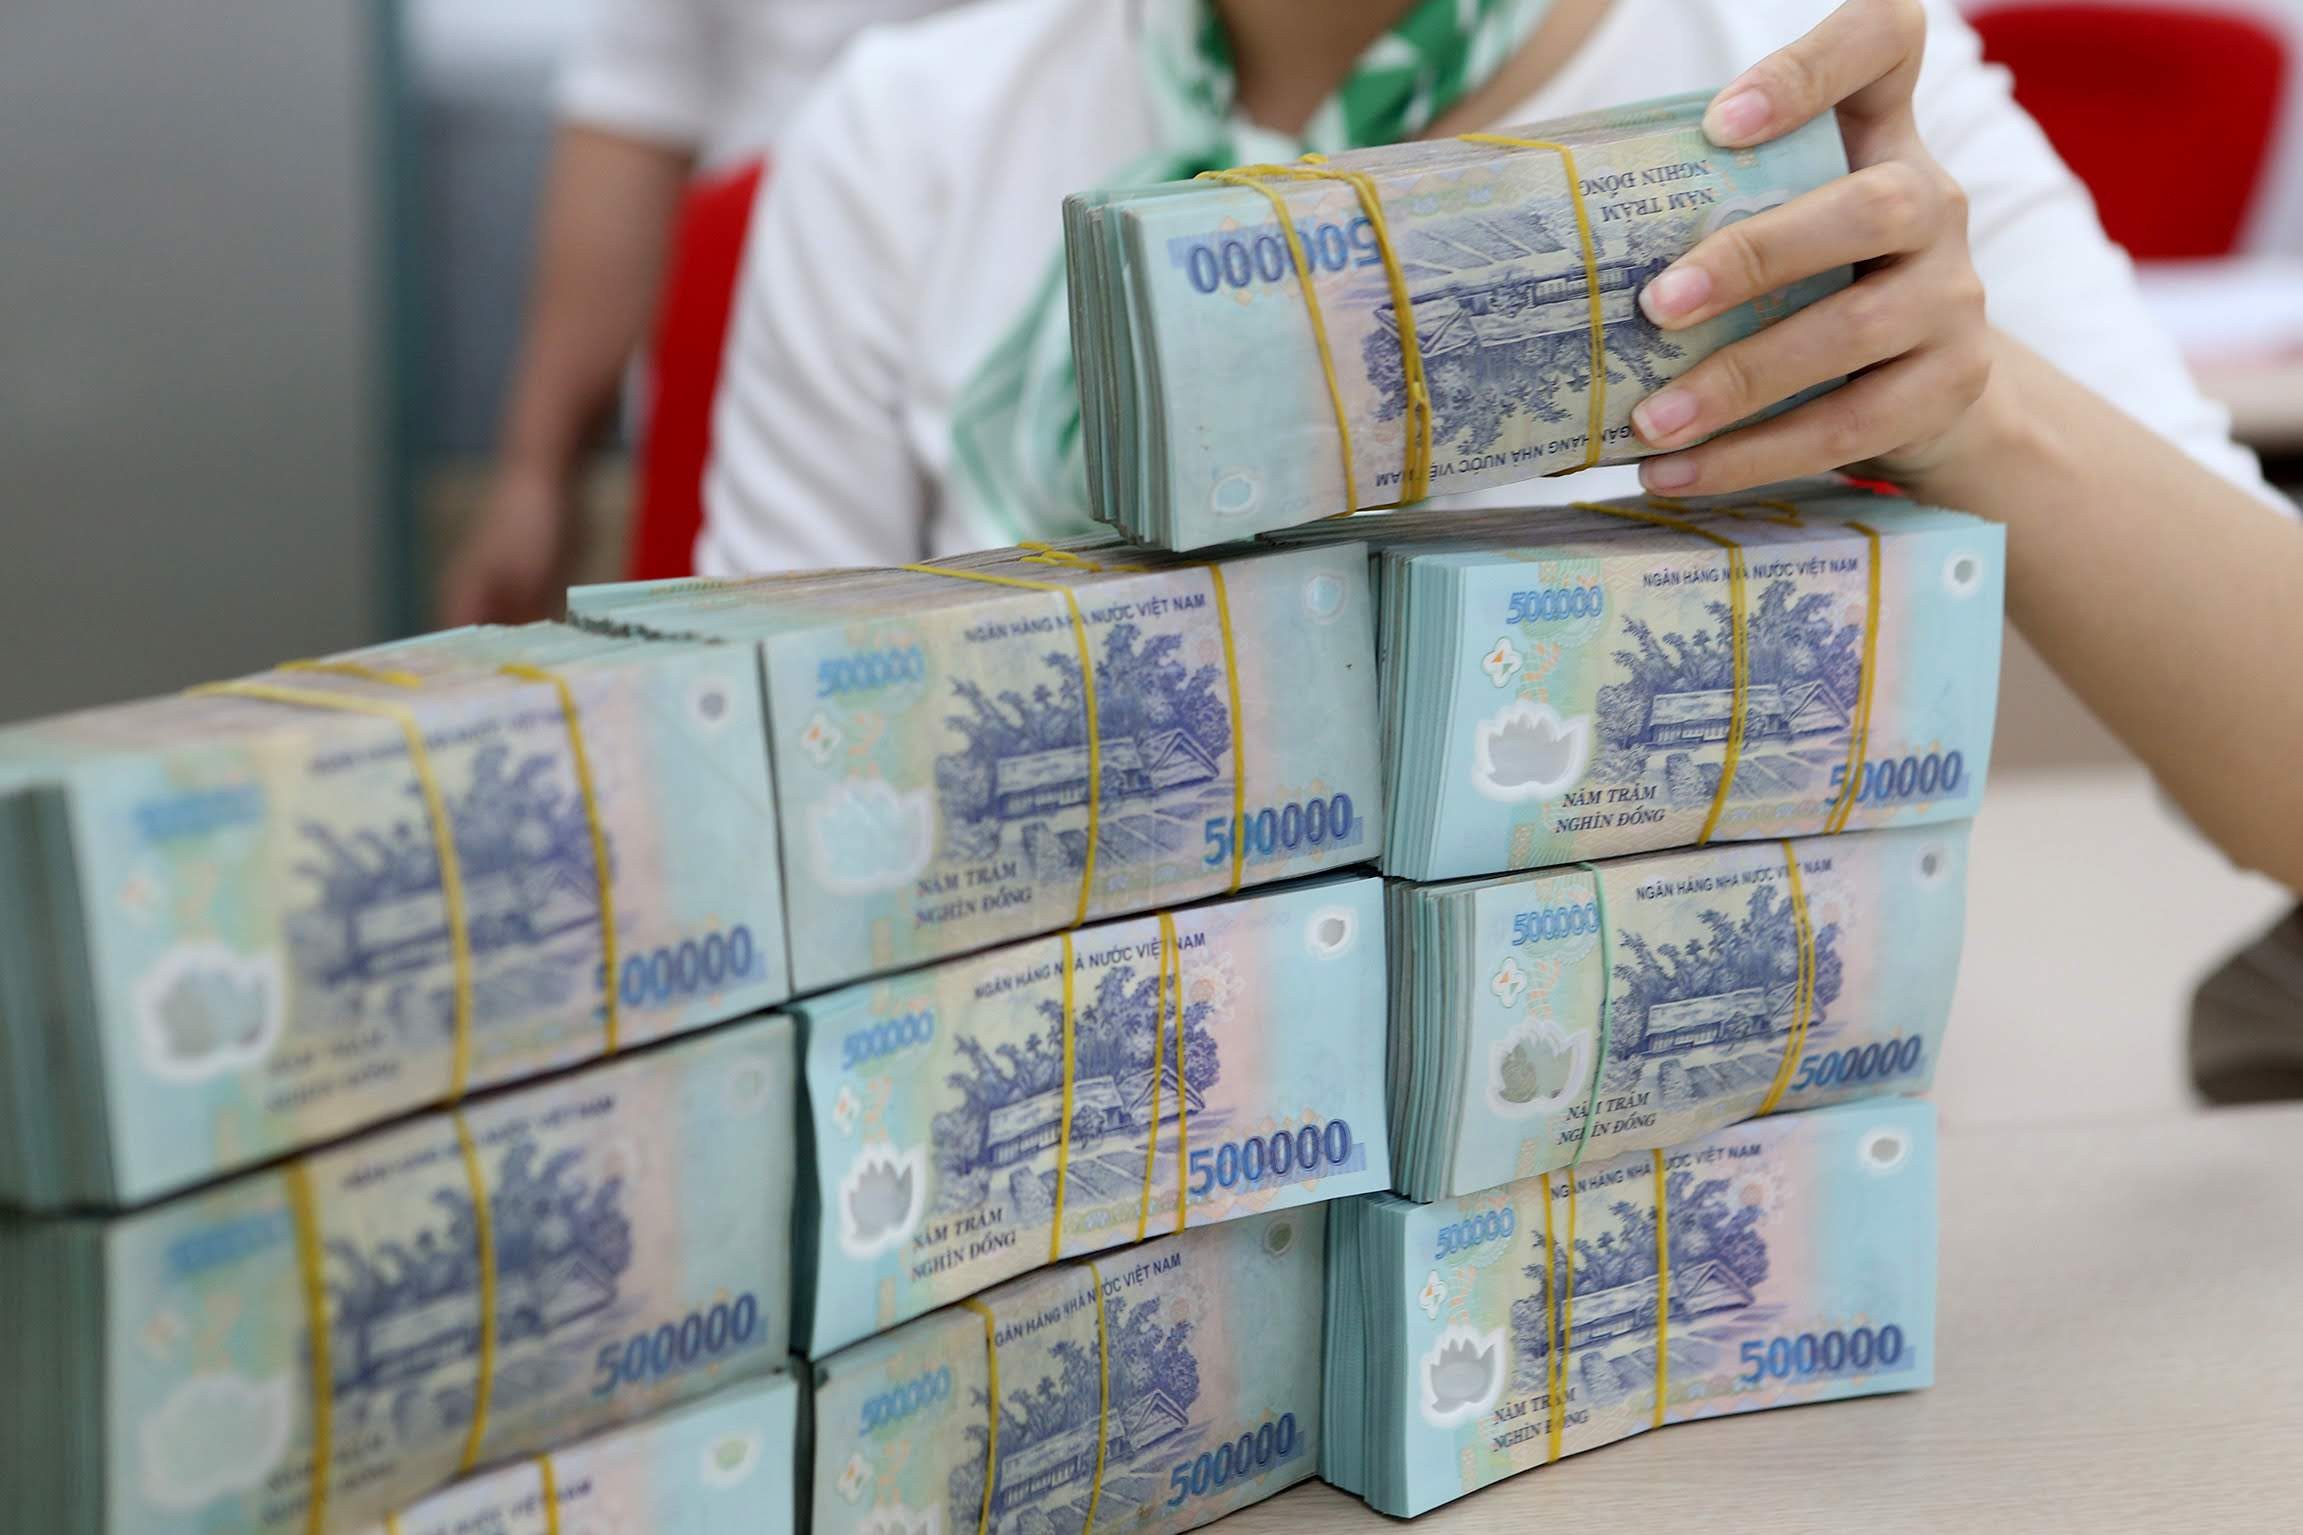 ABBANK đang có kết quả kinh doanh ấn tượng trong 9 tháng đầu năm. Việc đầu tư vào ABBANK là một giải pháp tuyệt vời cho nhu cầu đầu tư của bạn. Hình ảnh về lợi nhuận của ABBANK sẽ cho bạn hiểu rõ hơn về tiềm năng kinh doanh của ngân hàng và khẳng định tiền Việt Nam có giá trị đích thực.